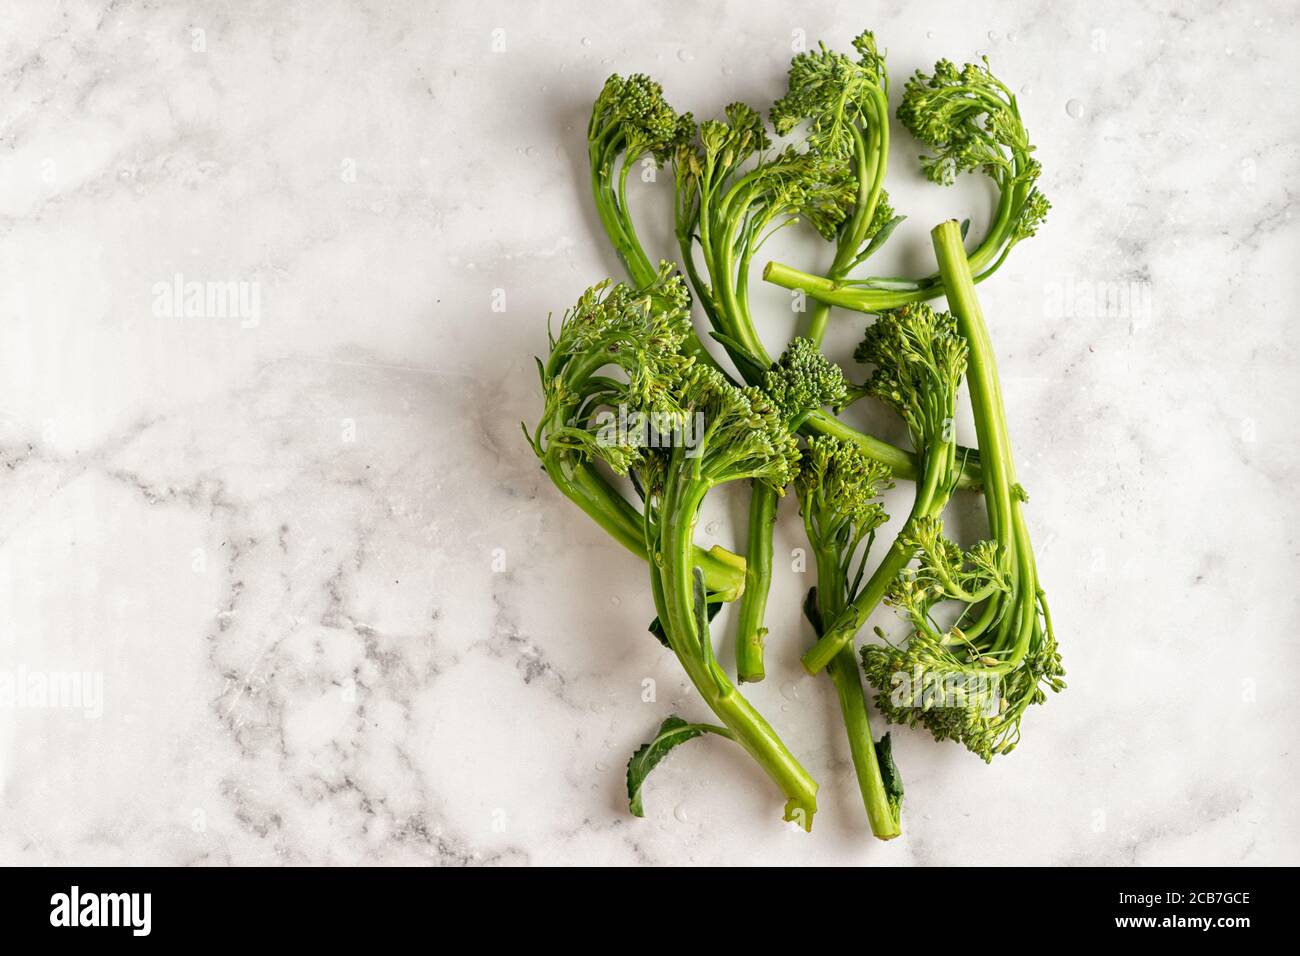 Vue de dessus du chou de broccolini sur fond blanc Banque D'Images